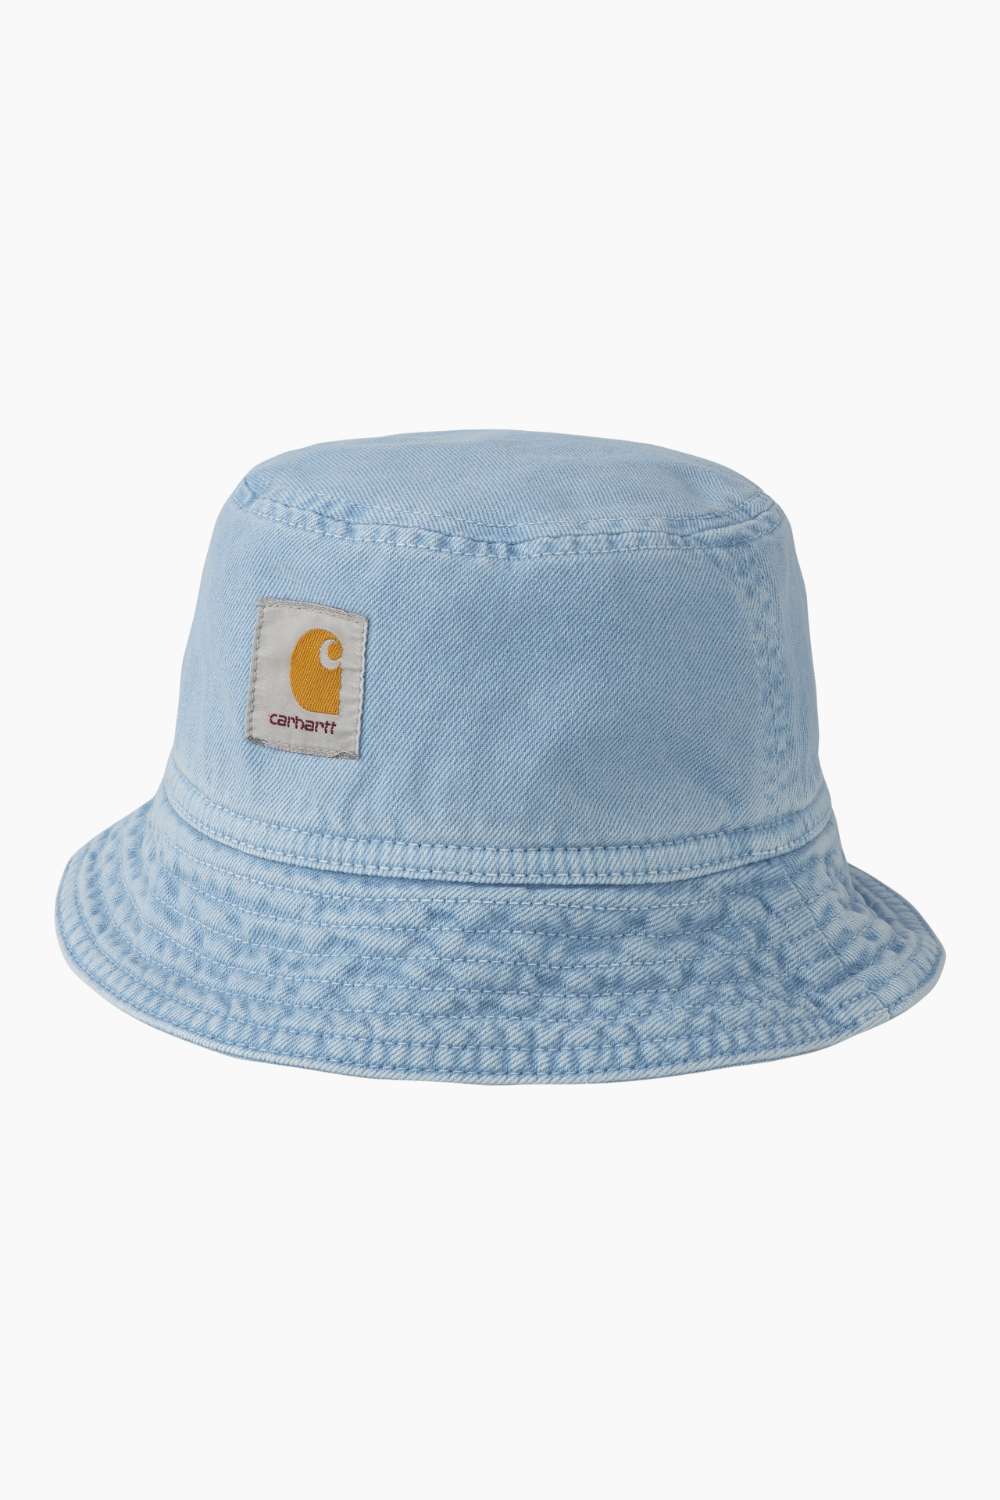 Billede af Garrison Bucket Hat - Frosted Blue (Stone Dyed) - Carhartt WIP - Blå S/M